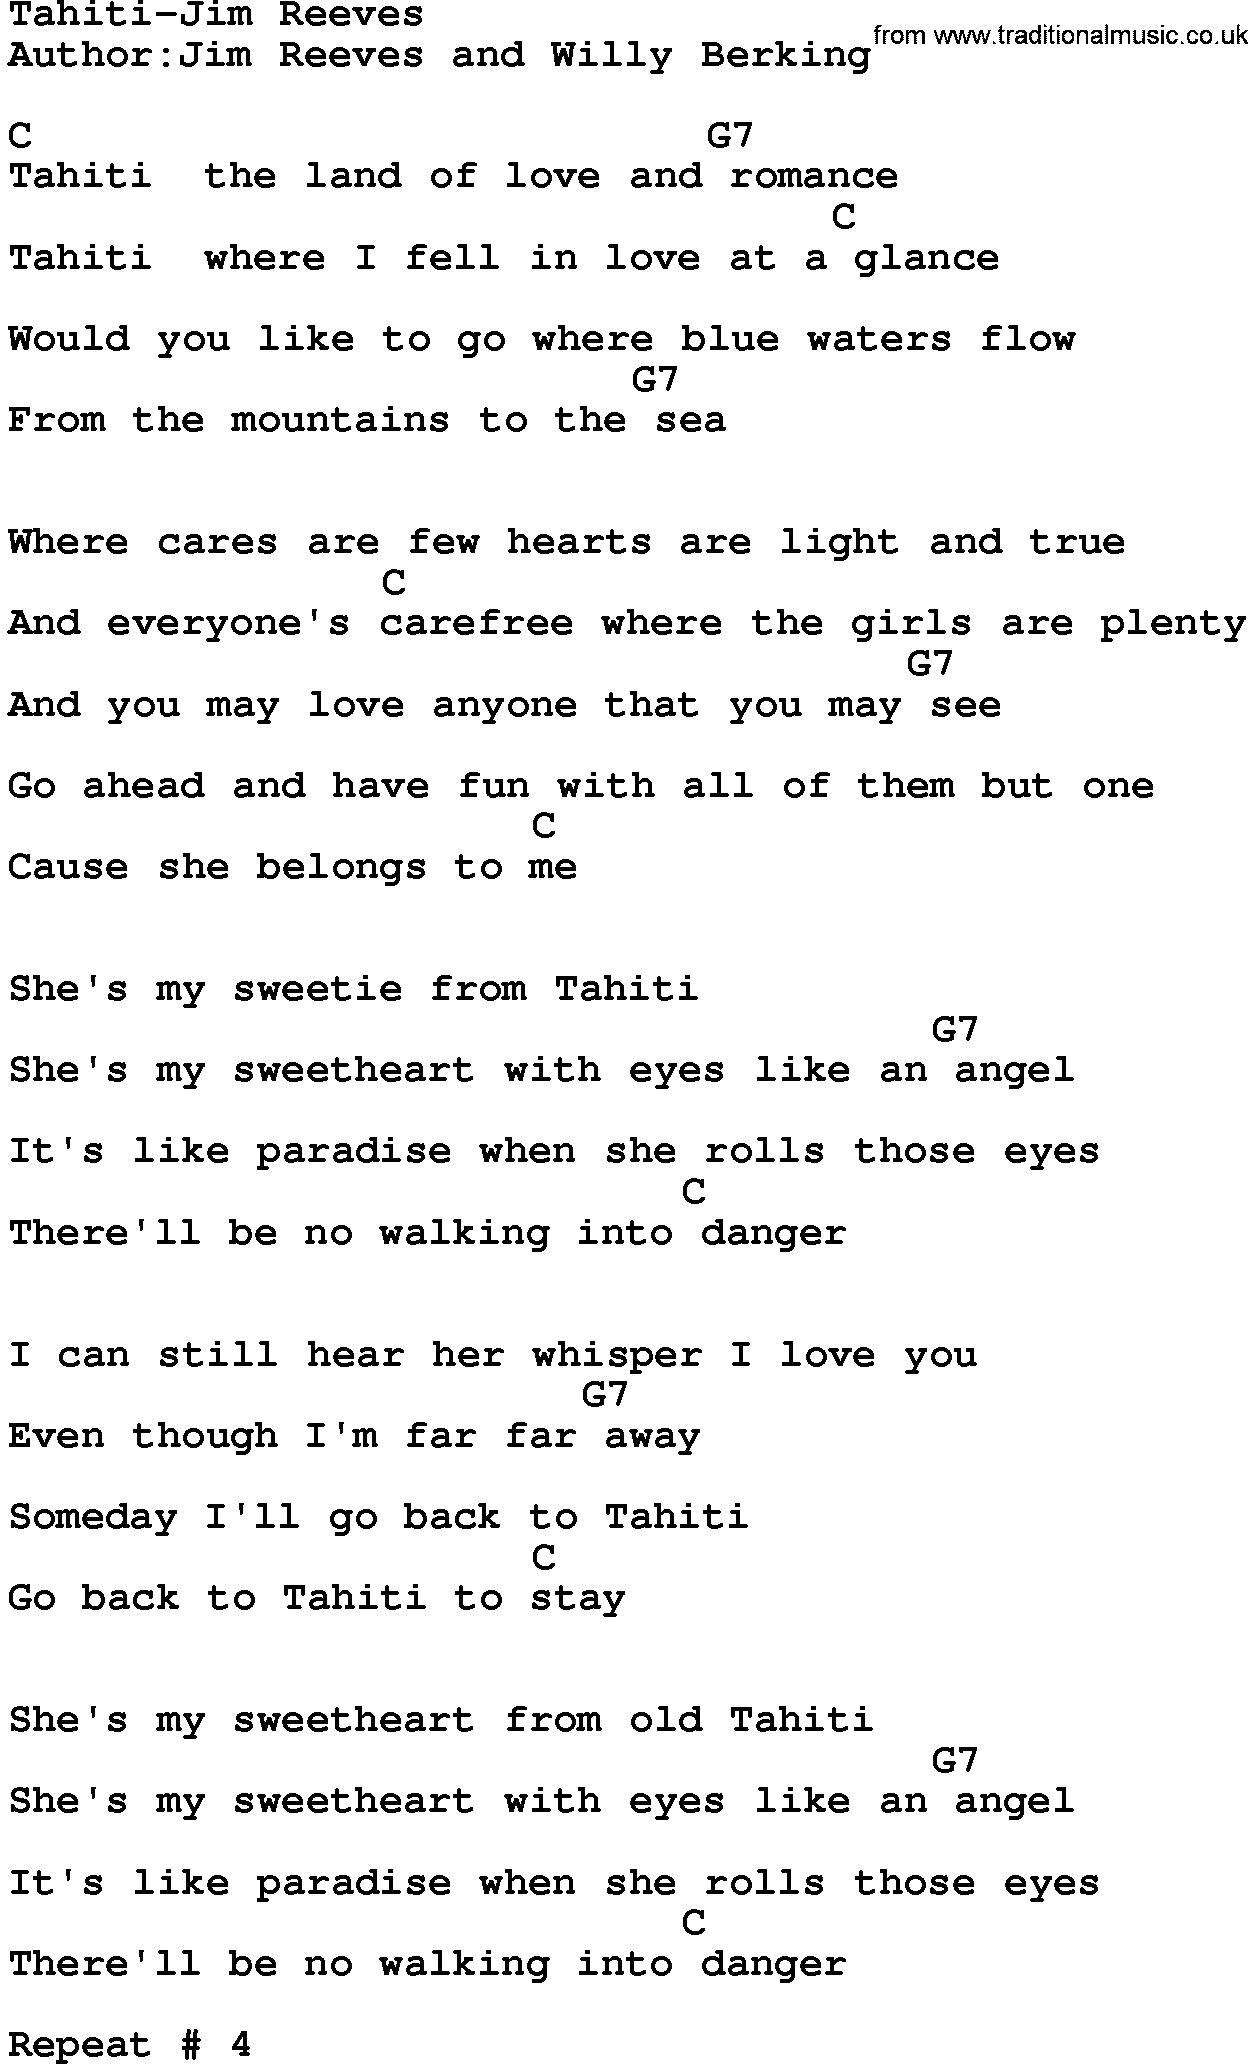 Country music song: Tahiti-Jim Reeves lyrics and chords